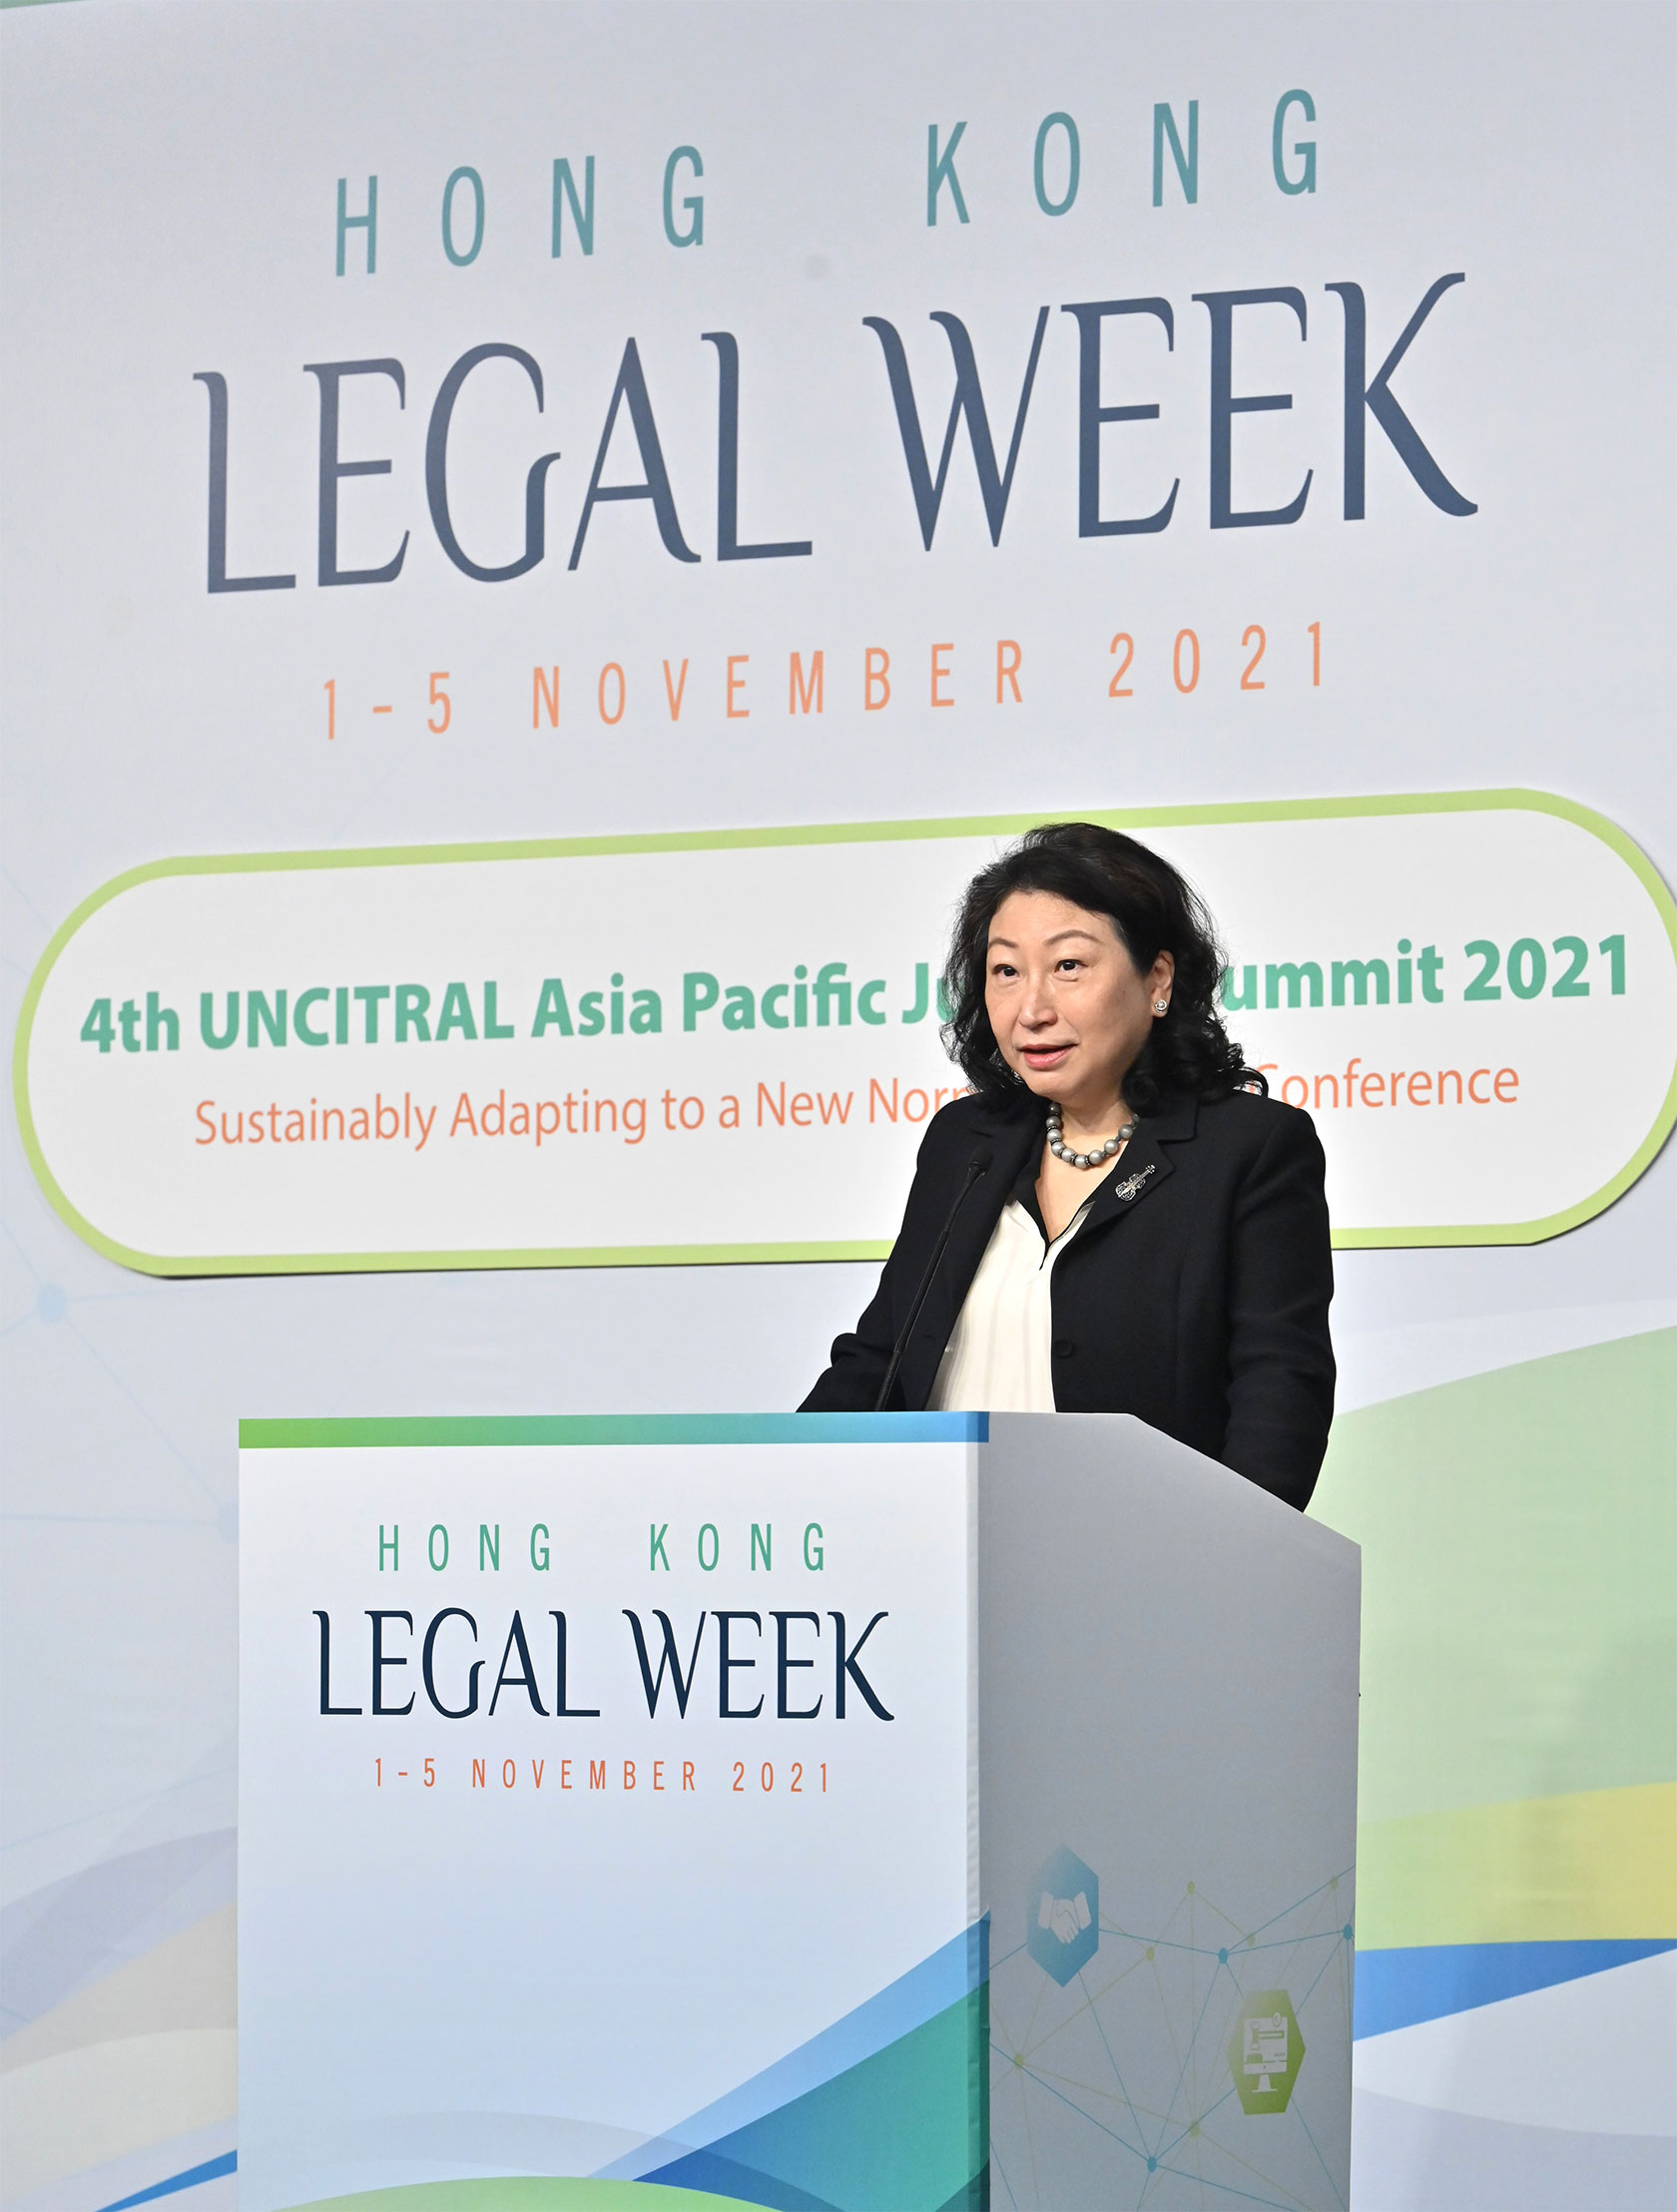 律政司司长郑若骅资深大律师今日（十一月一日）在第四届联合国国际贸易法委员会亚太司法会议致辞，该会议为香港法律周2021的活动之一。